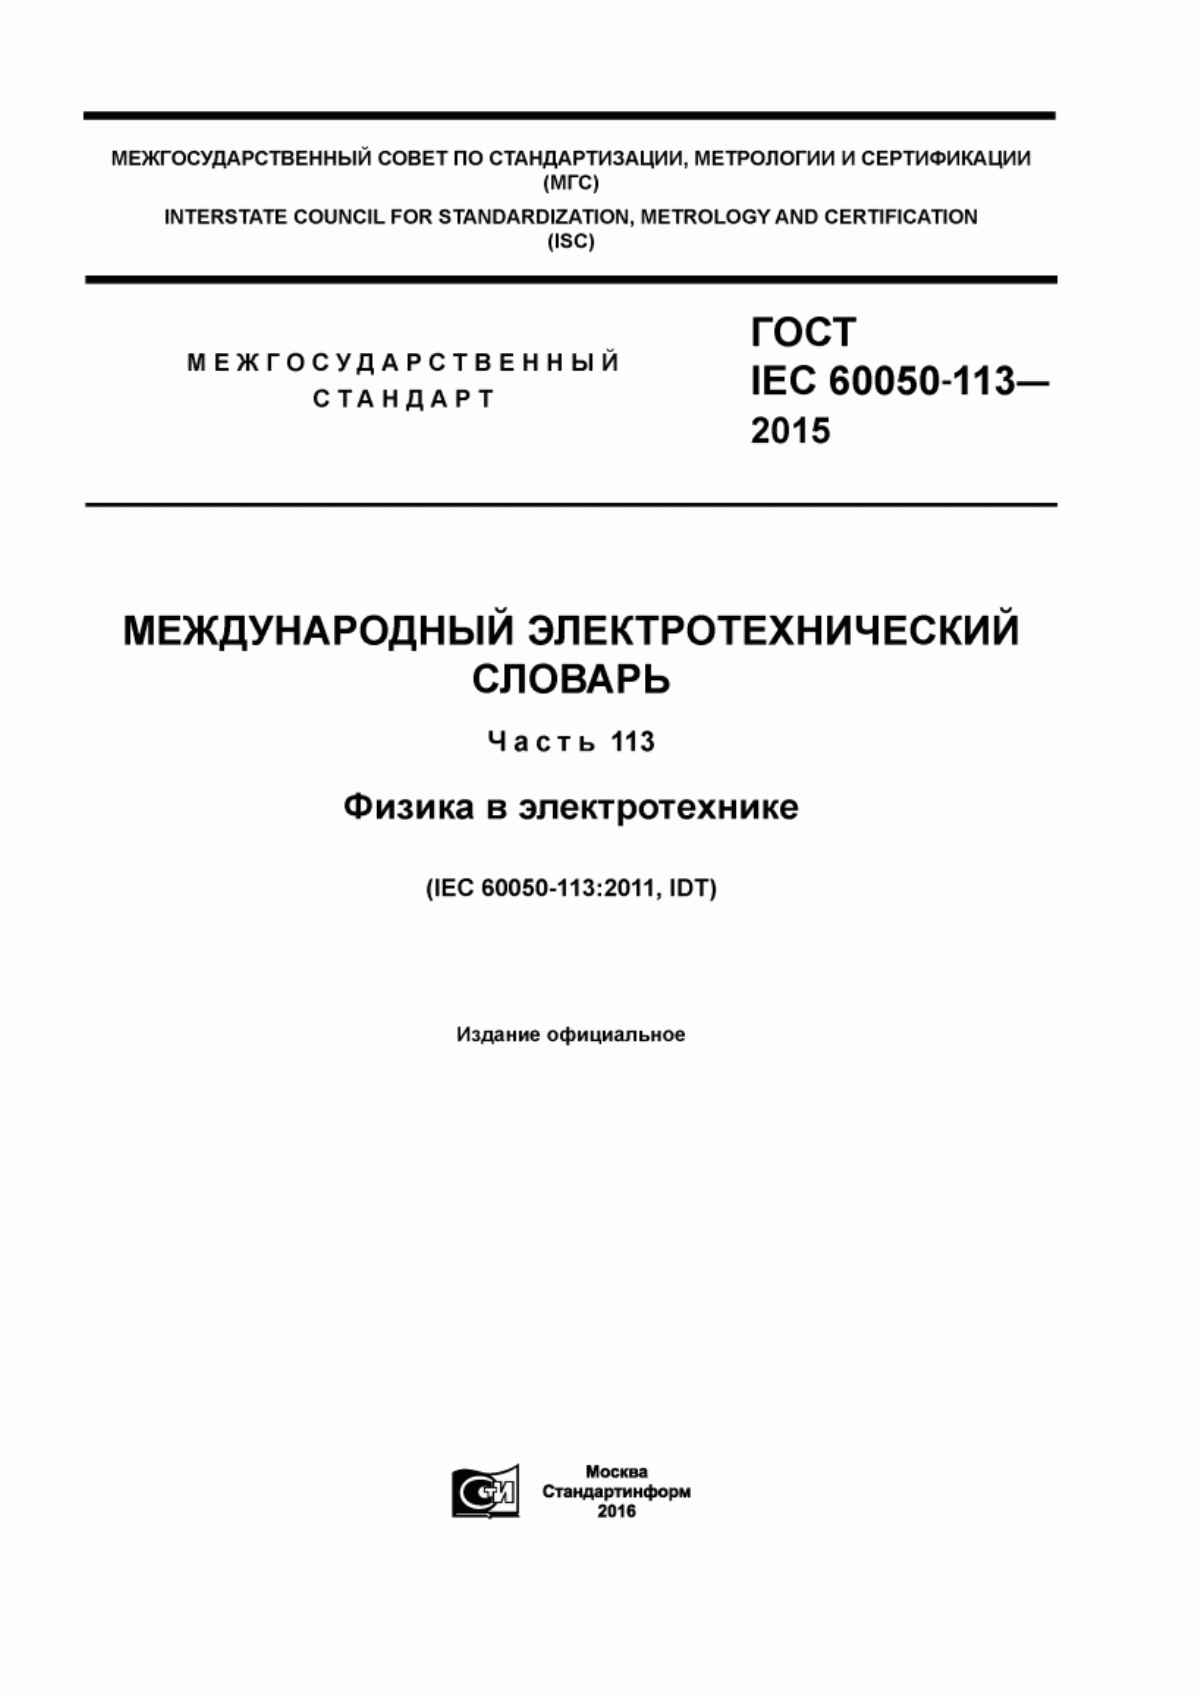 ГОСТ IEC 60050-113-2015 Международный электротехнический словарь. Часть 113. Физика в электротехнике